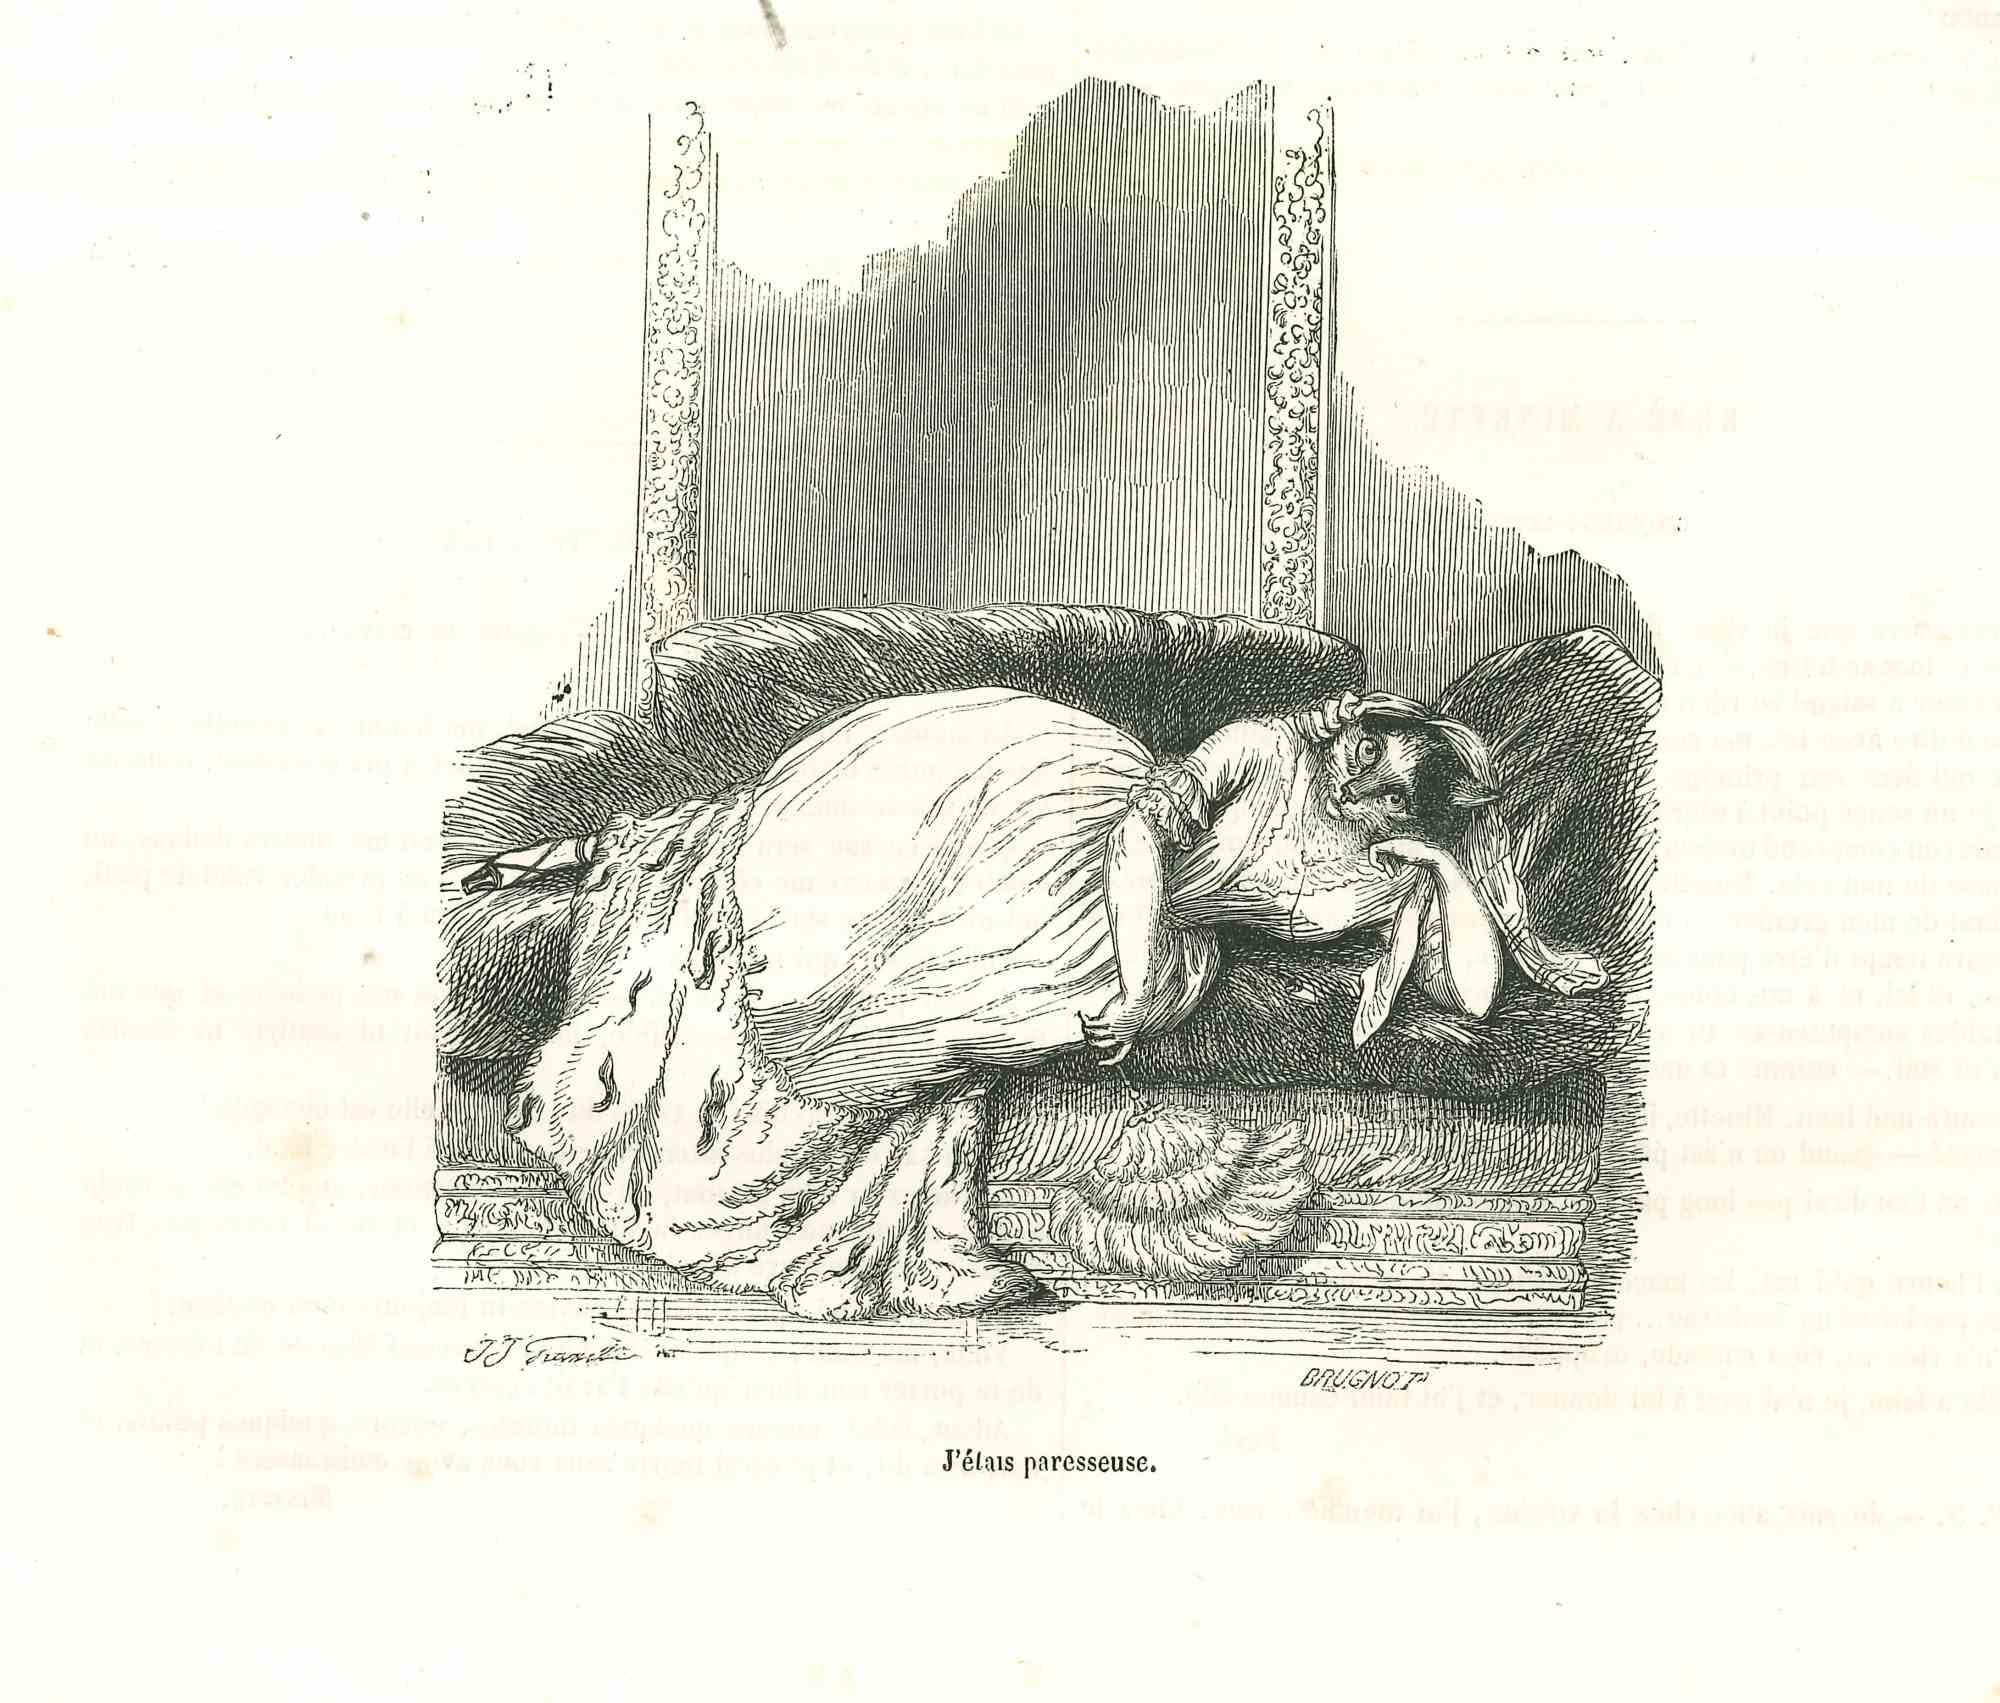 J'Etait Paresseuse - Lithograph by J.J Grandville - 1852